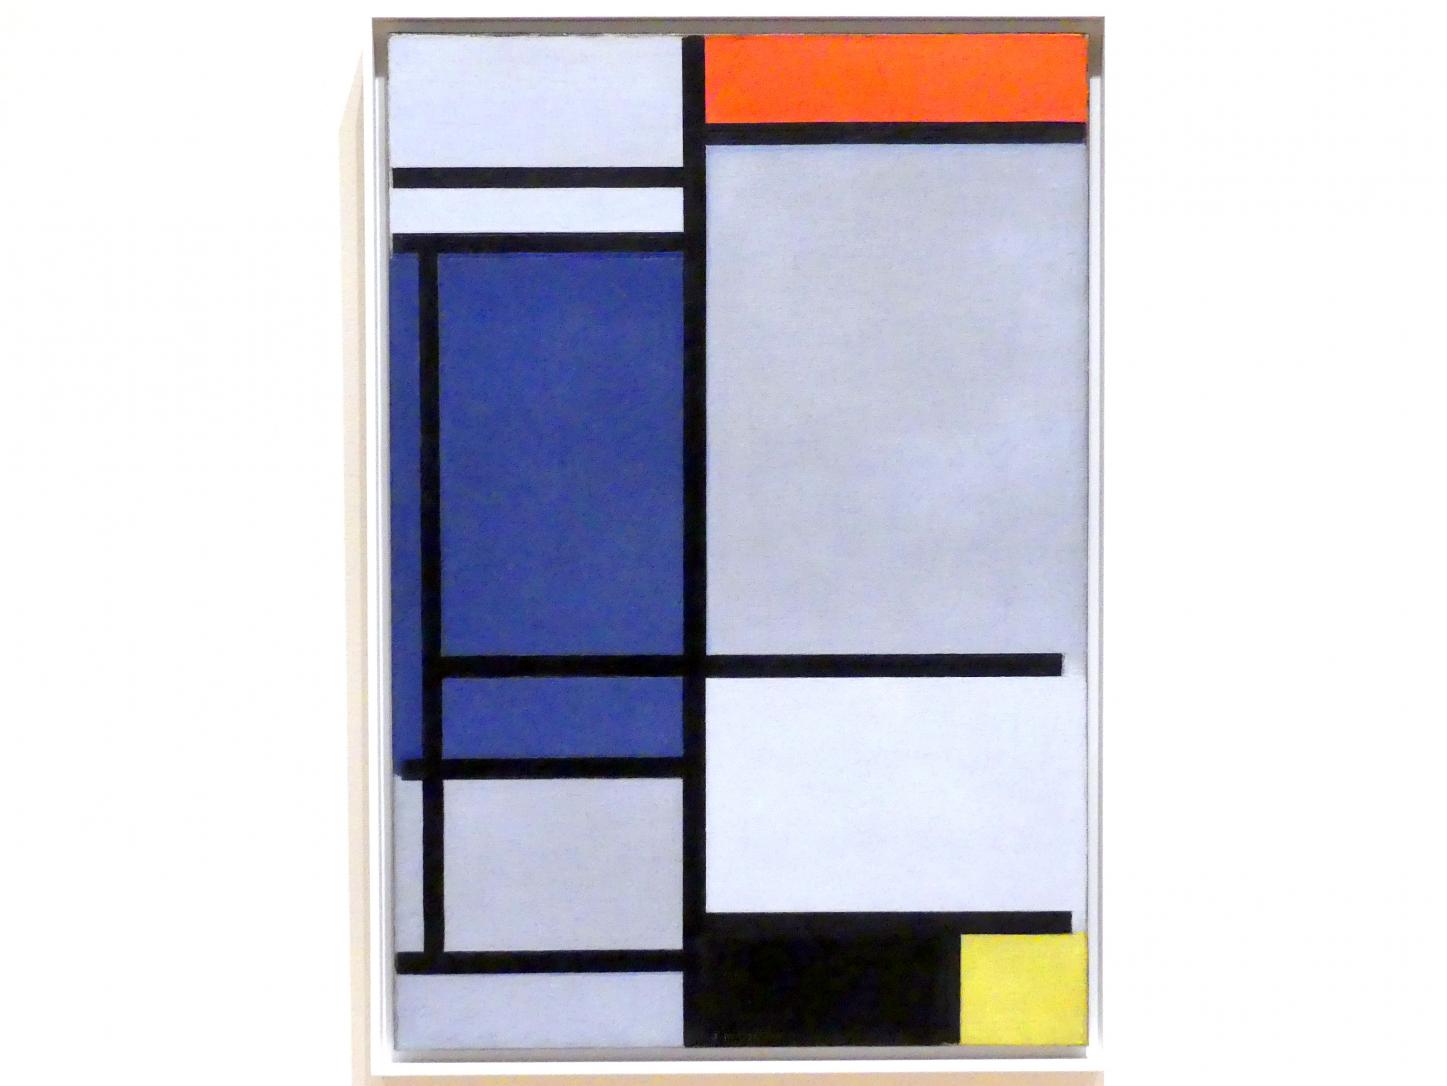 Piet Mondrian (1908–1942), Komposition mit Rot, Blau, Schwarz, Gelb und Grau, New York, Museum of Modern Art (MoMA), Saal 512, 1921, Bild 1/2